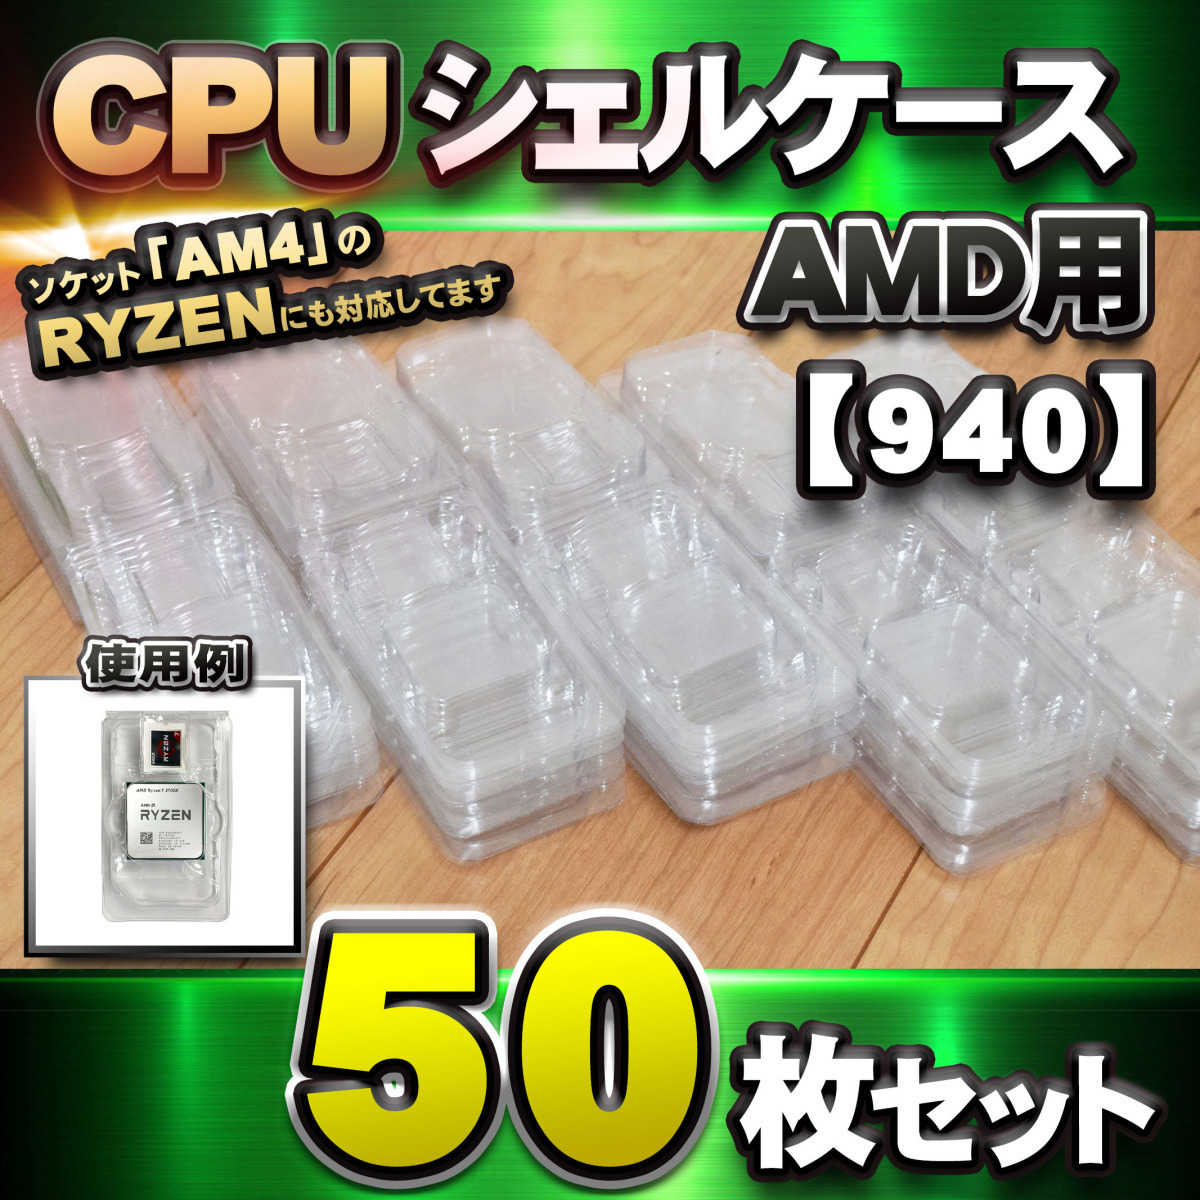 【 939 対応 】CPU シェルケース AMD用 プラスチック 【AM4のRYZENにも対応】 保管 収納ケース 50枚セット_画像9